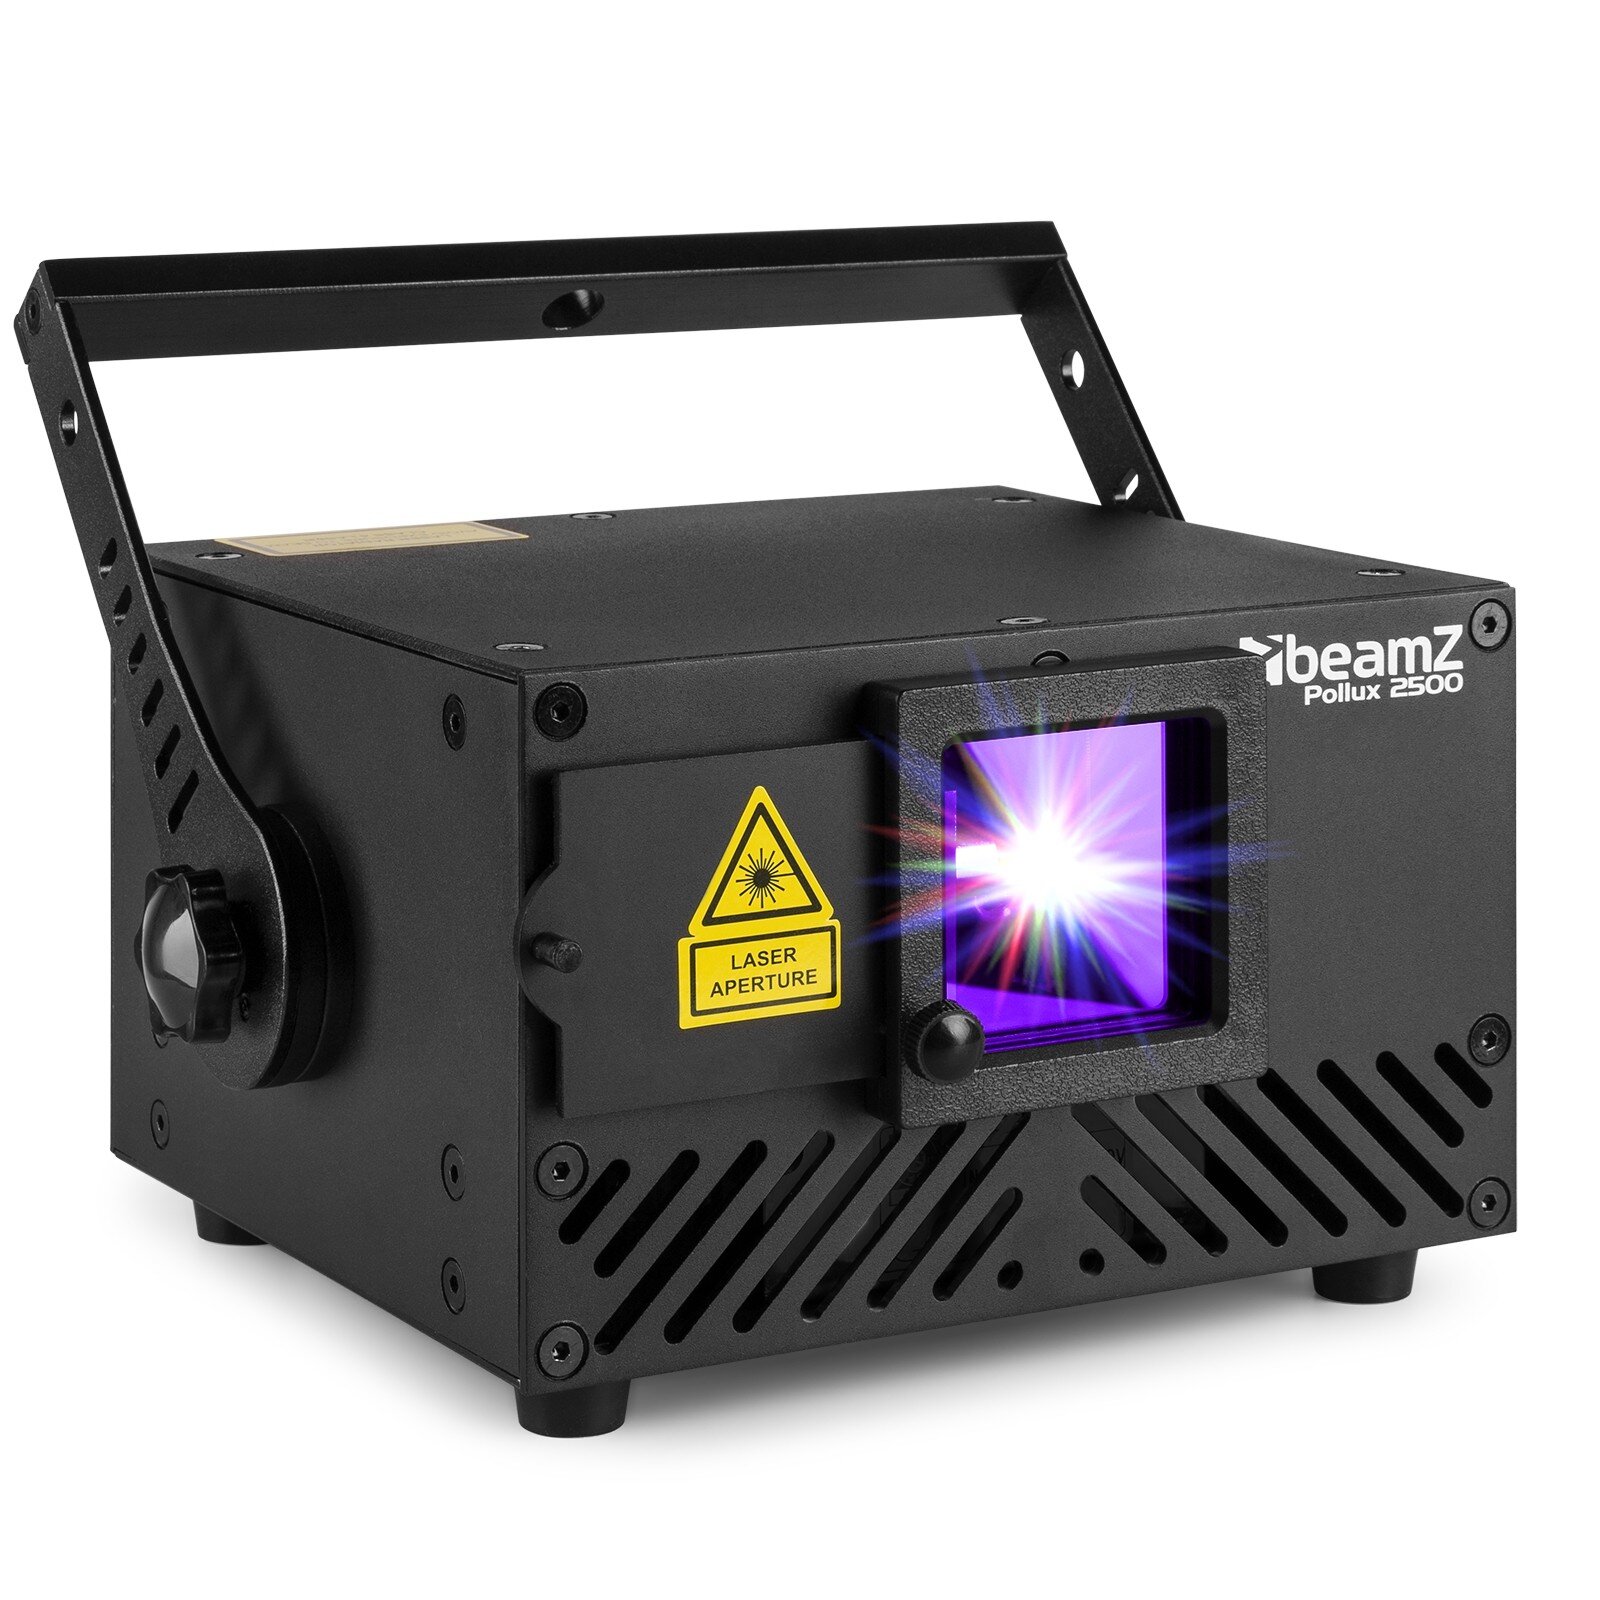 BeamZ 2500 Pollux laser RGB - Flerfärgad 2500mW analog laser - DMX och ILDA